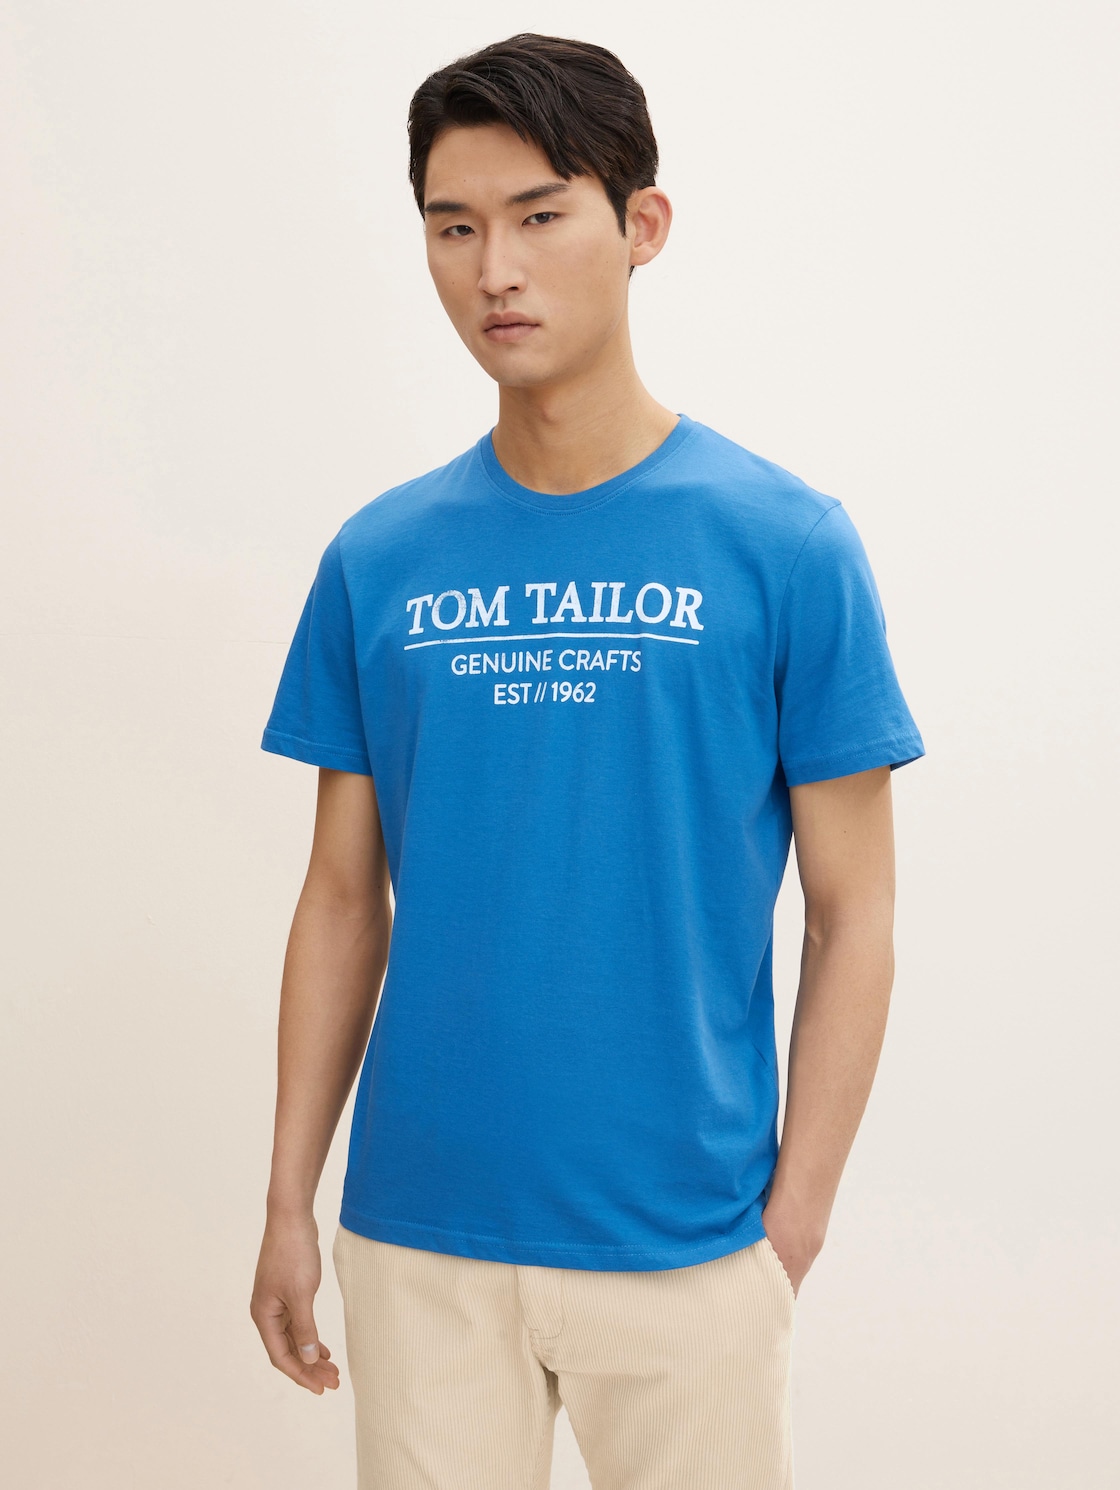 TOM TAILOR Herren T-Shirt mit Bio-Baumwolle, blau, Logo Print, Gr. XL,